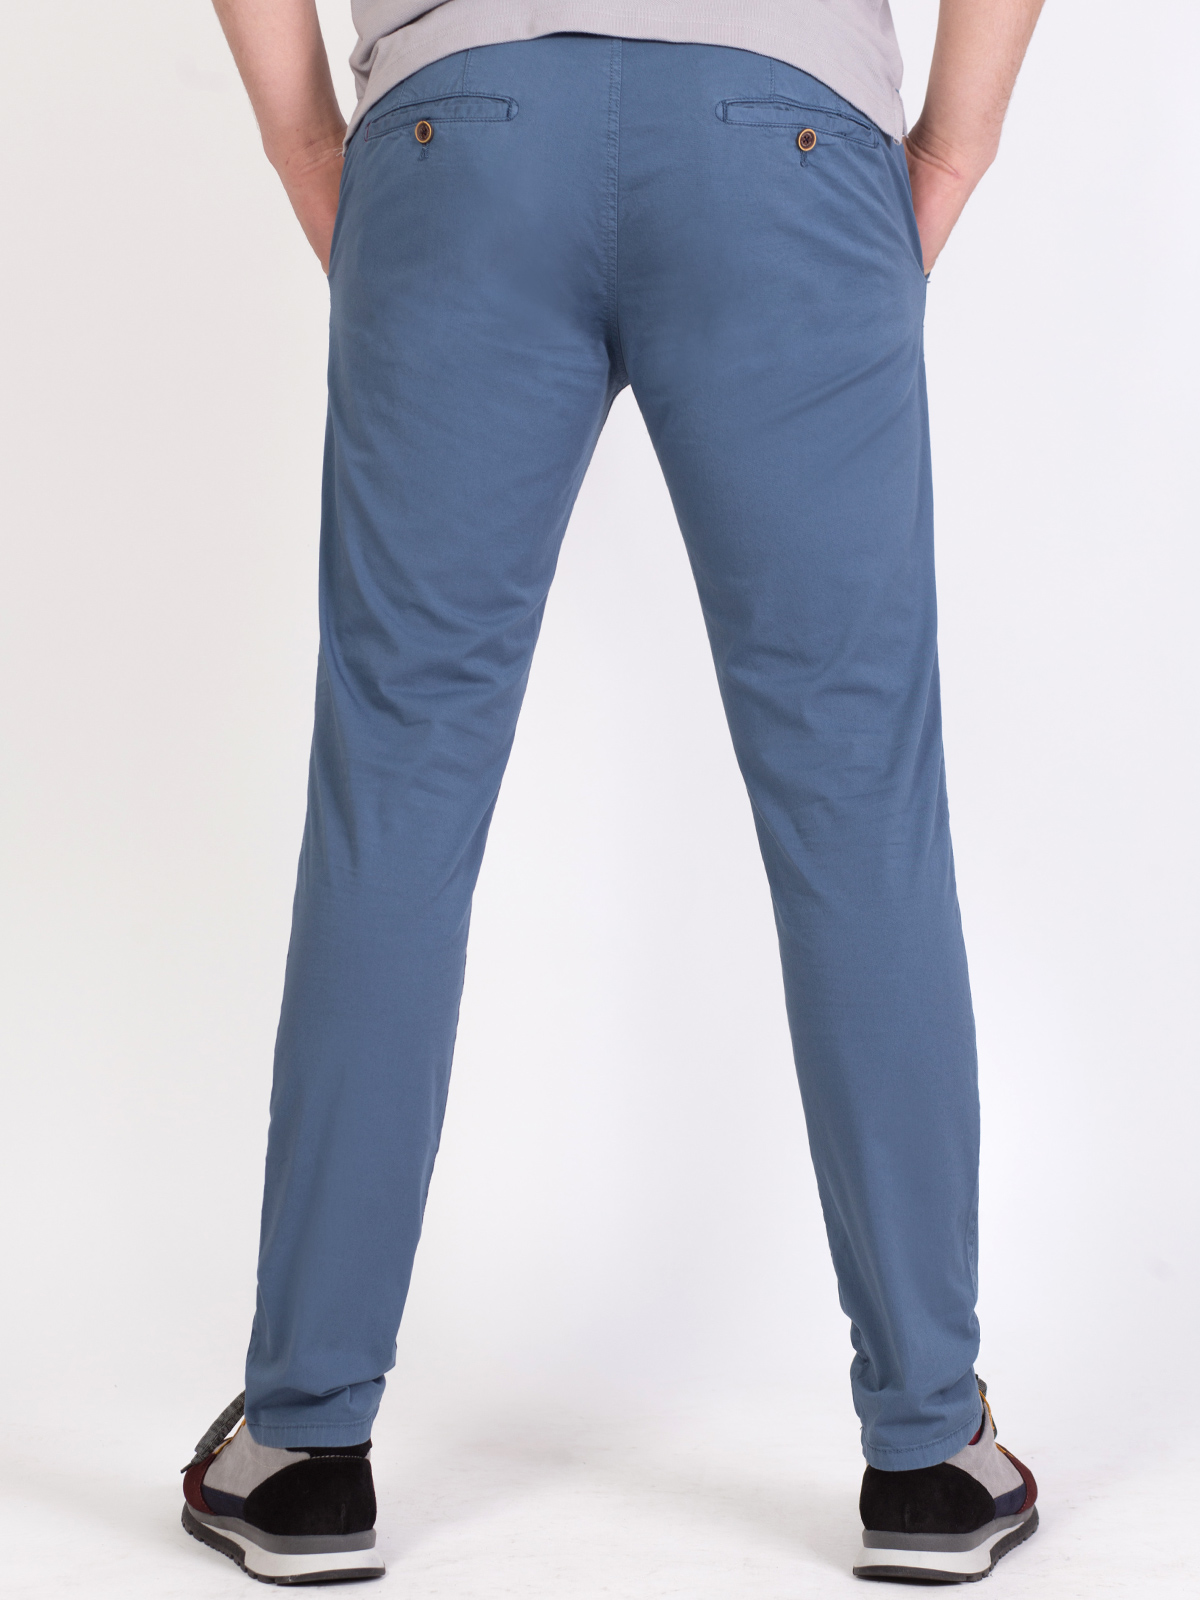 Netplay Slim Fit Men Light Blue Trousers - Buy Netplay Slim Fit Men Light  Blue Trousers Online at Best Prices in India | Flipkart.com